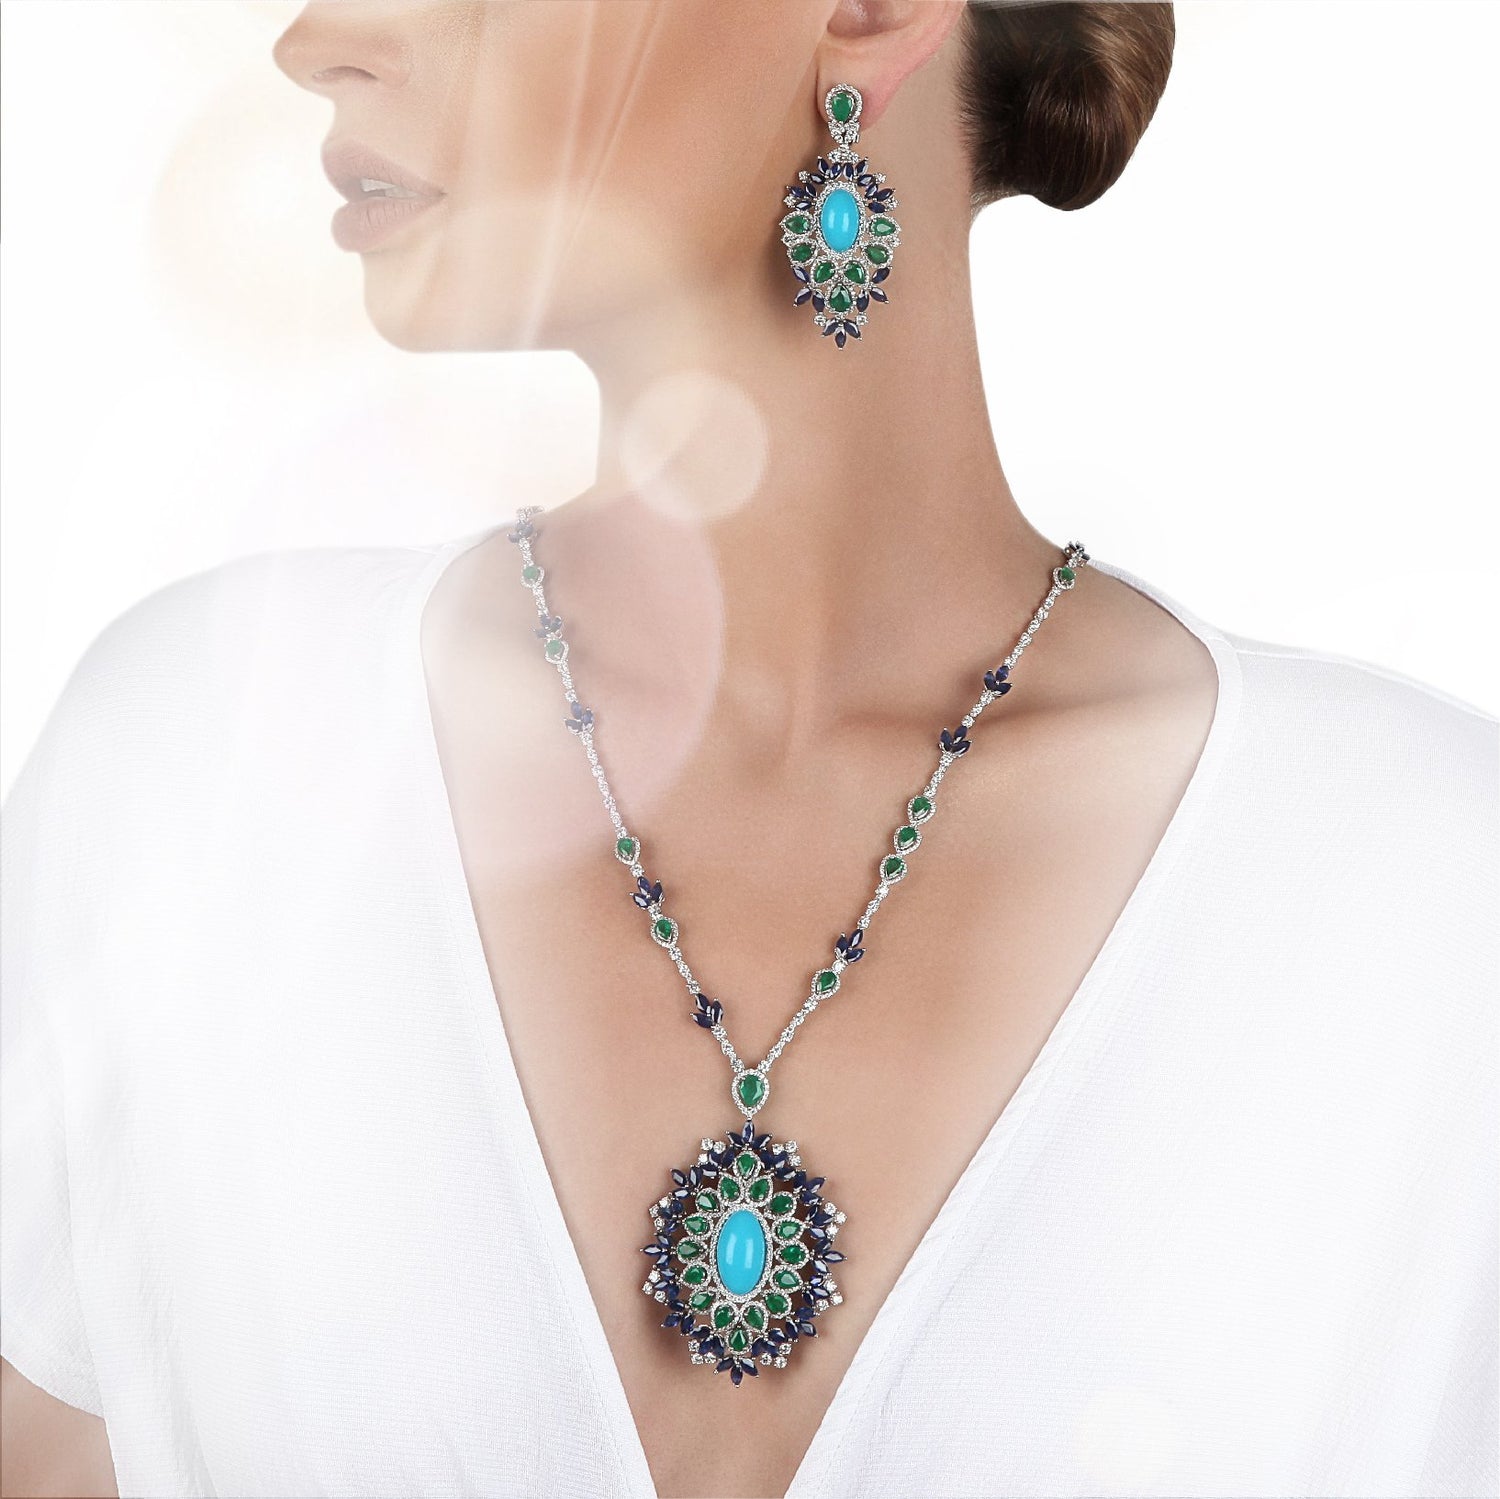 Order earrings online in Saudi Arabia | Jewelry online in Kuwait